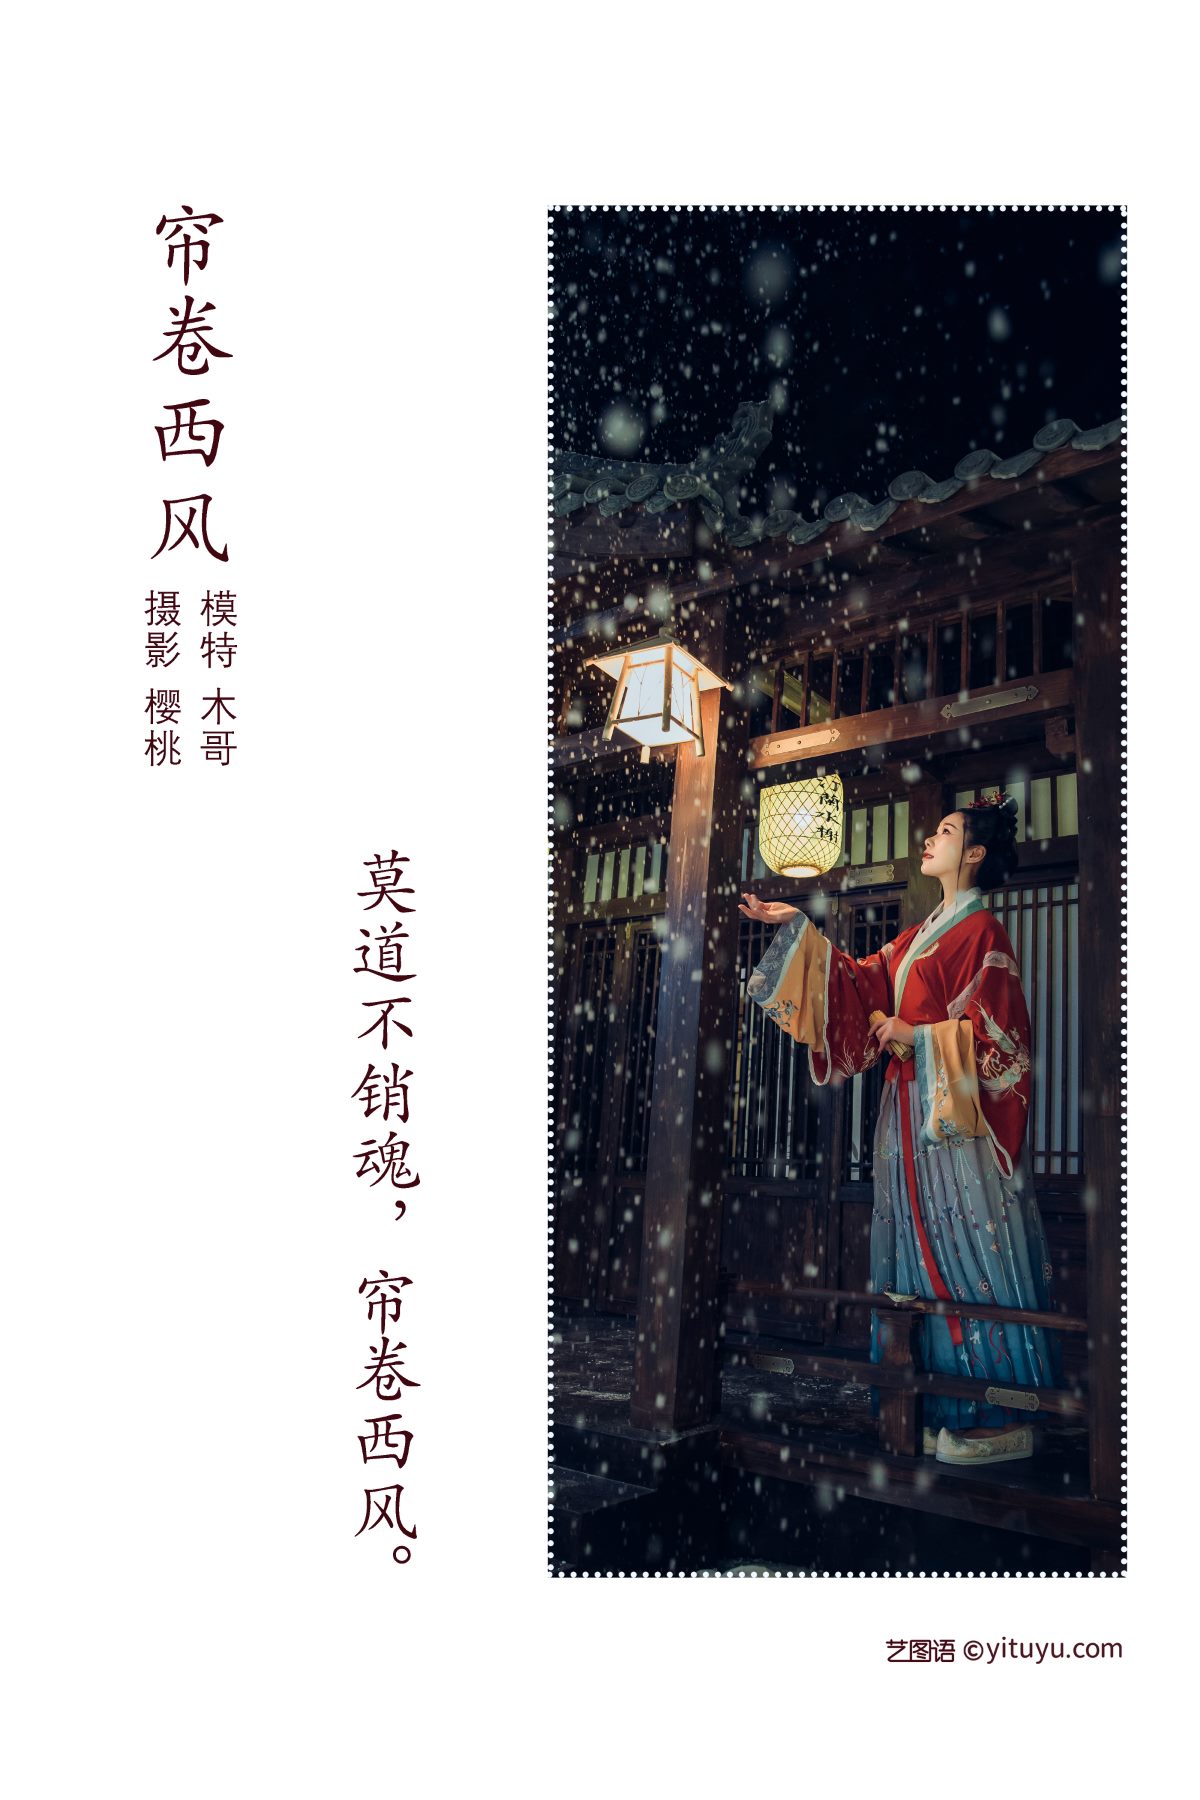 YiTuYu艺图语 Vol 1099 Mu Jing Shu 0002 2760909923.jpg